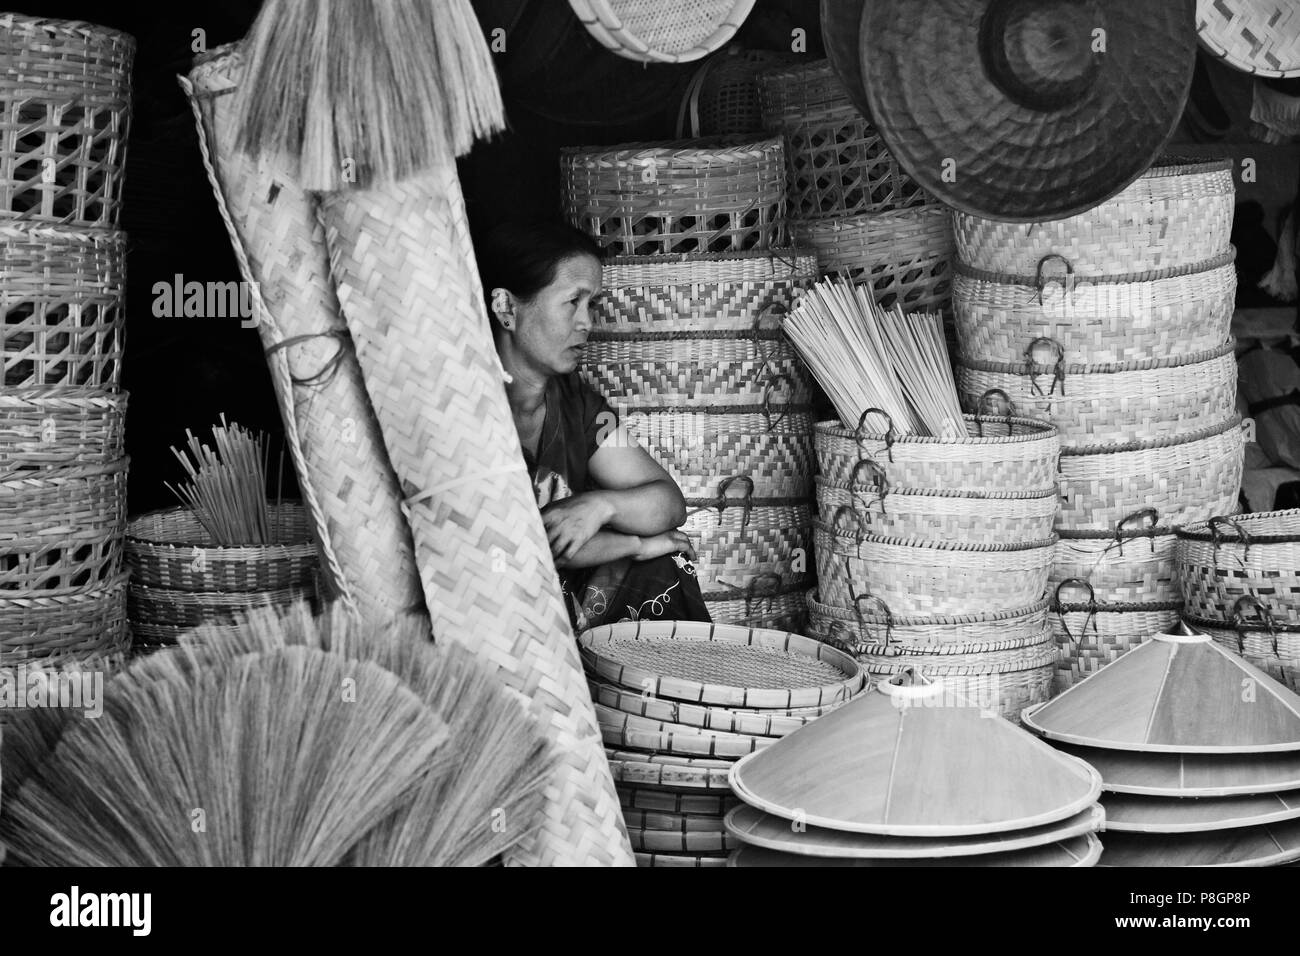 Bambus Besen, Hüte und Körbe sind erhältlich bei der zentralen Markt in kengtung auch als KYAINGTONG - MYANMAR bekannt Stockfoto